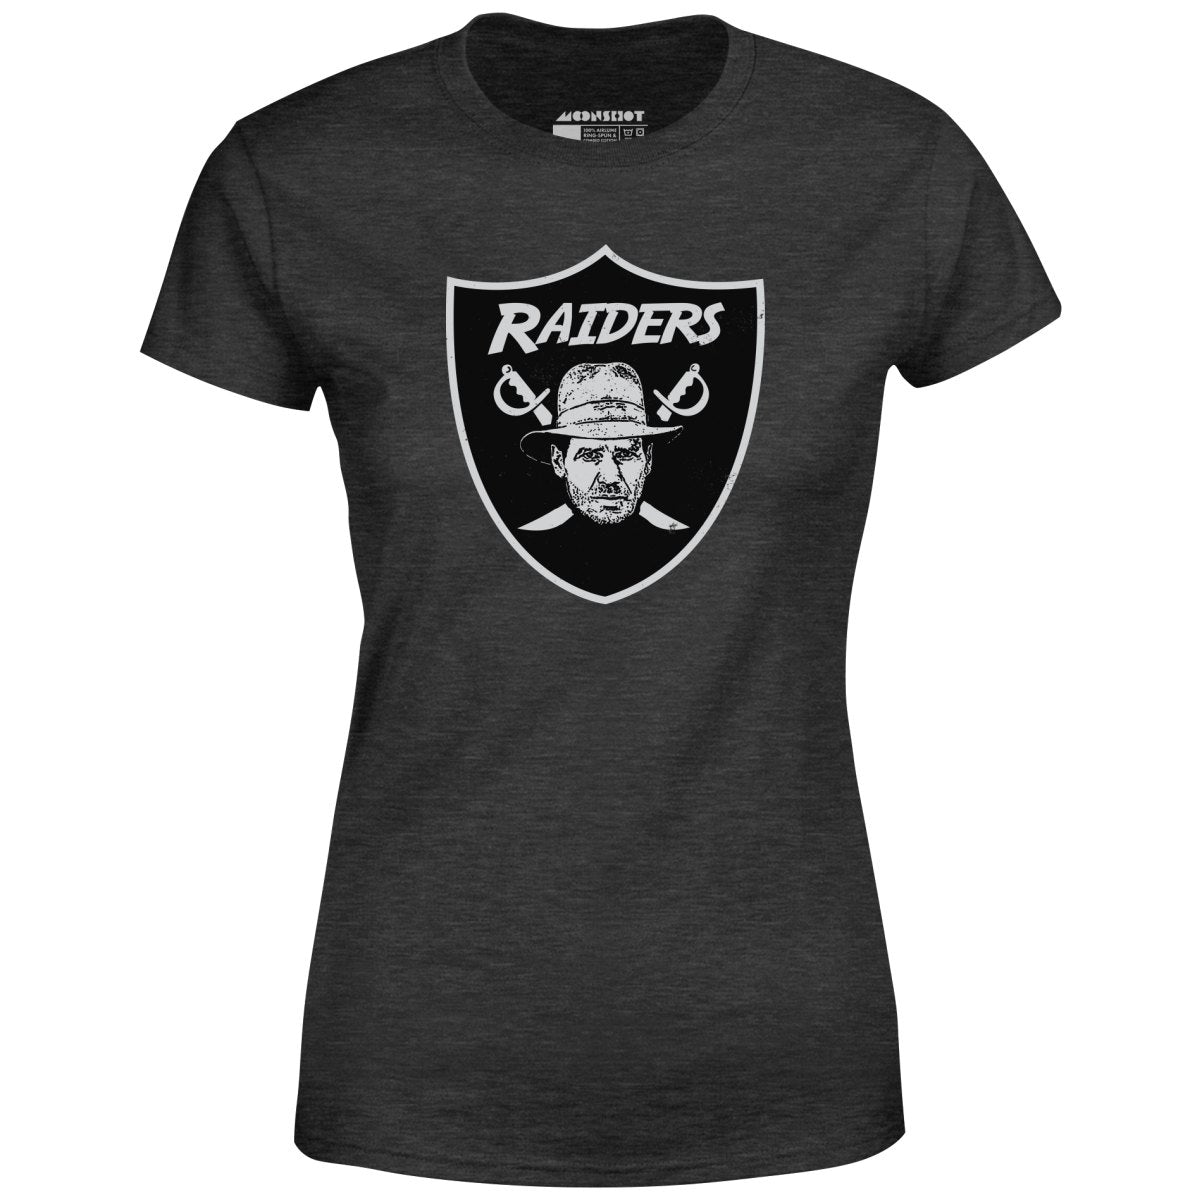 Raiders Parody Indiana Jones Mashup - Women's T-Shirt